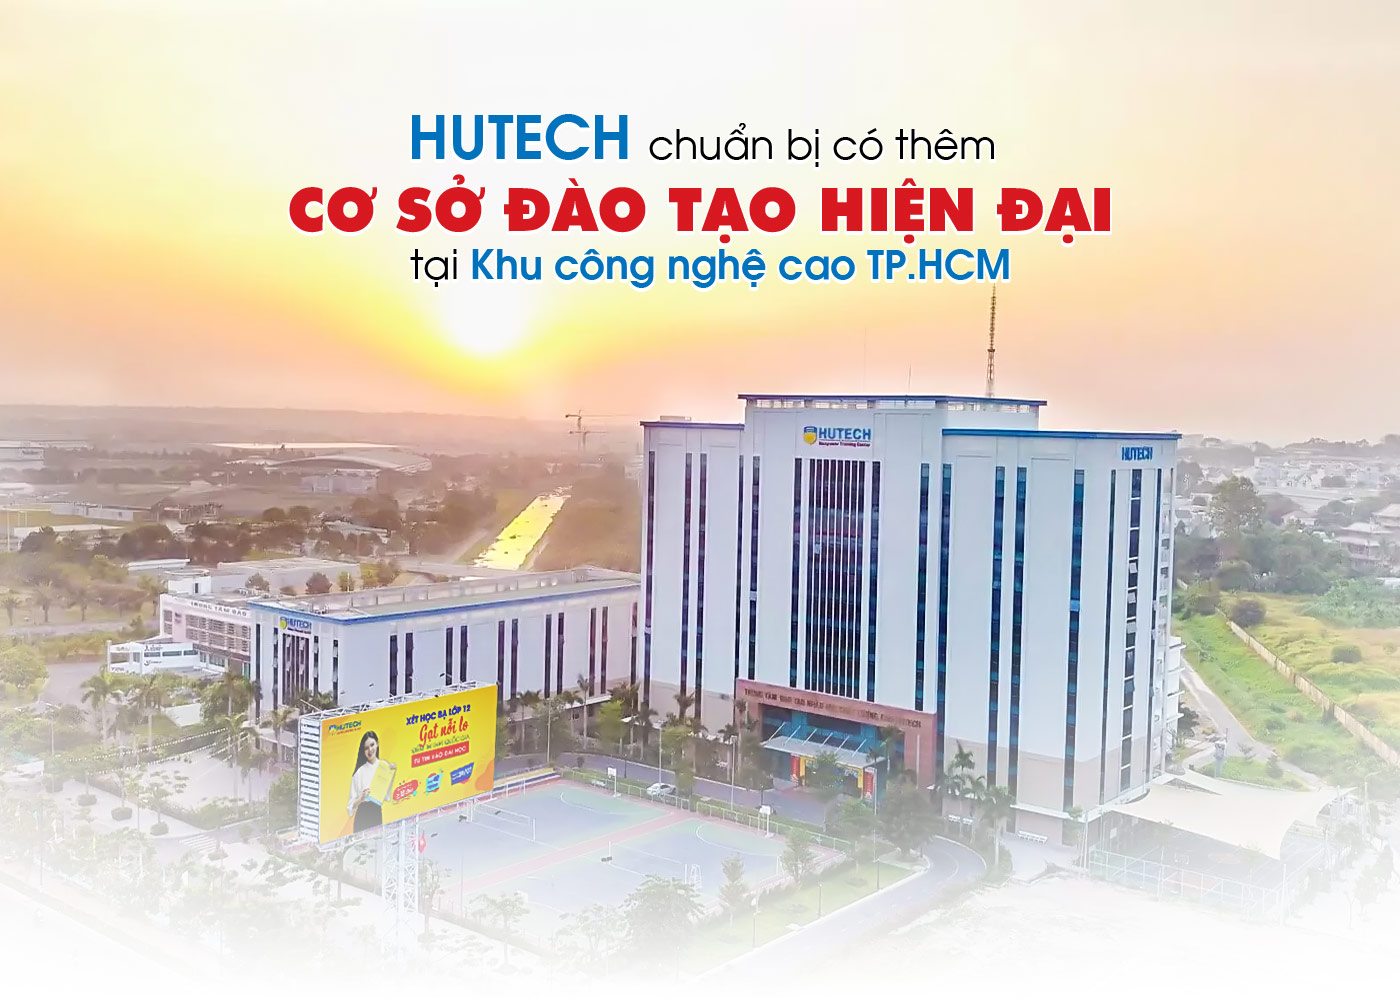 HUTECH chuẩn bị có thêm cơ sở đào tạo hiện đại tại Khu công nghệ cao TP.HCM - Ảnh 1